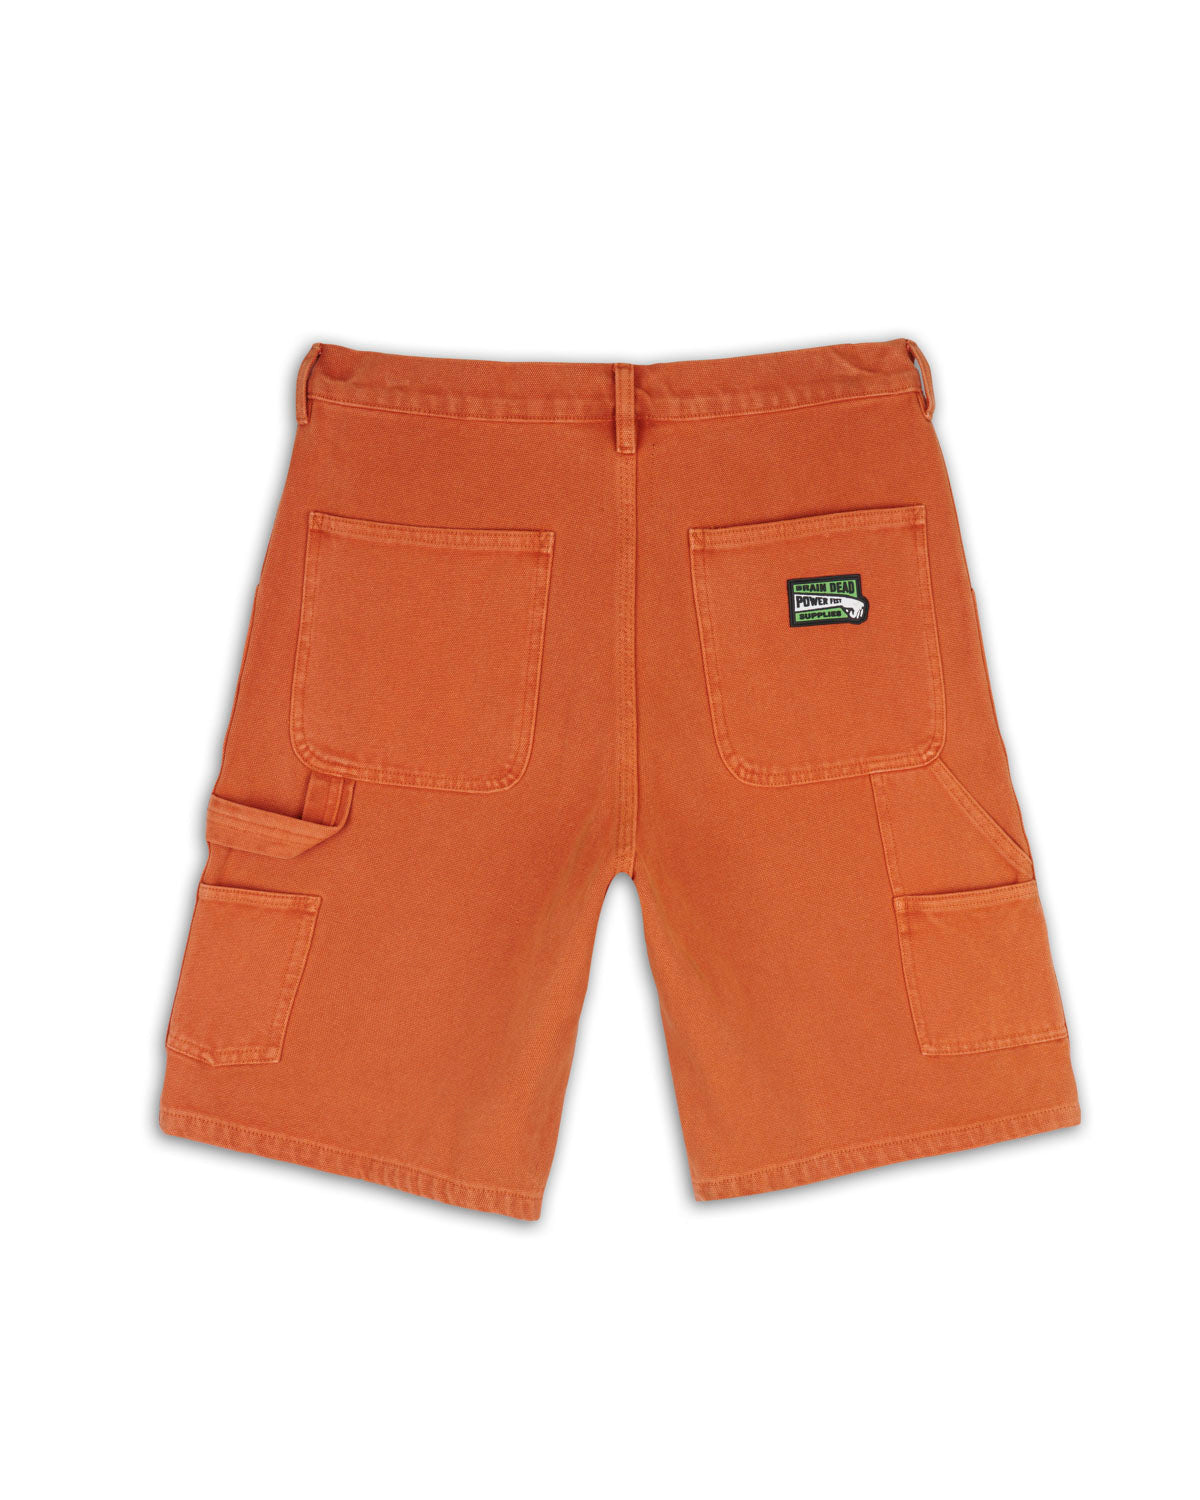 Washed Hard Ware/Soft Wear Carpenter Short - Burnt Orange 2